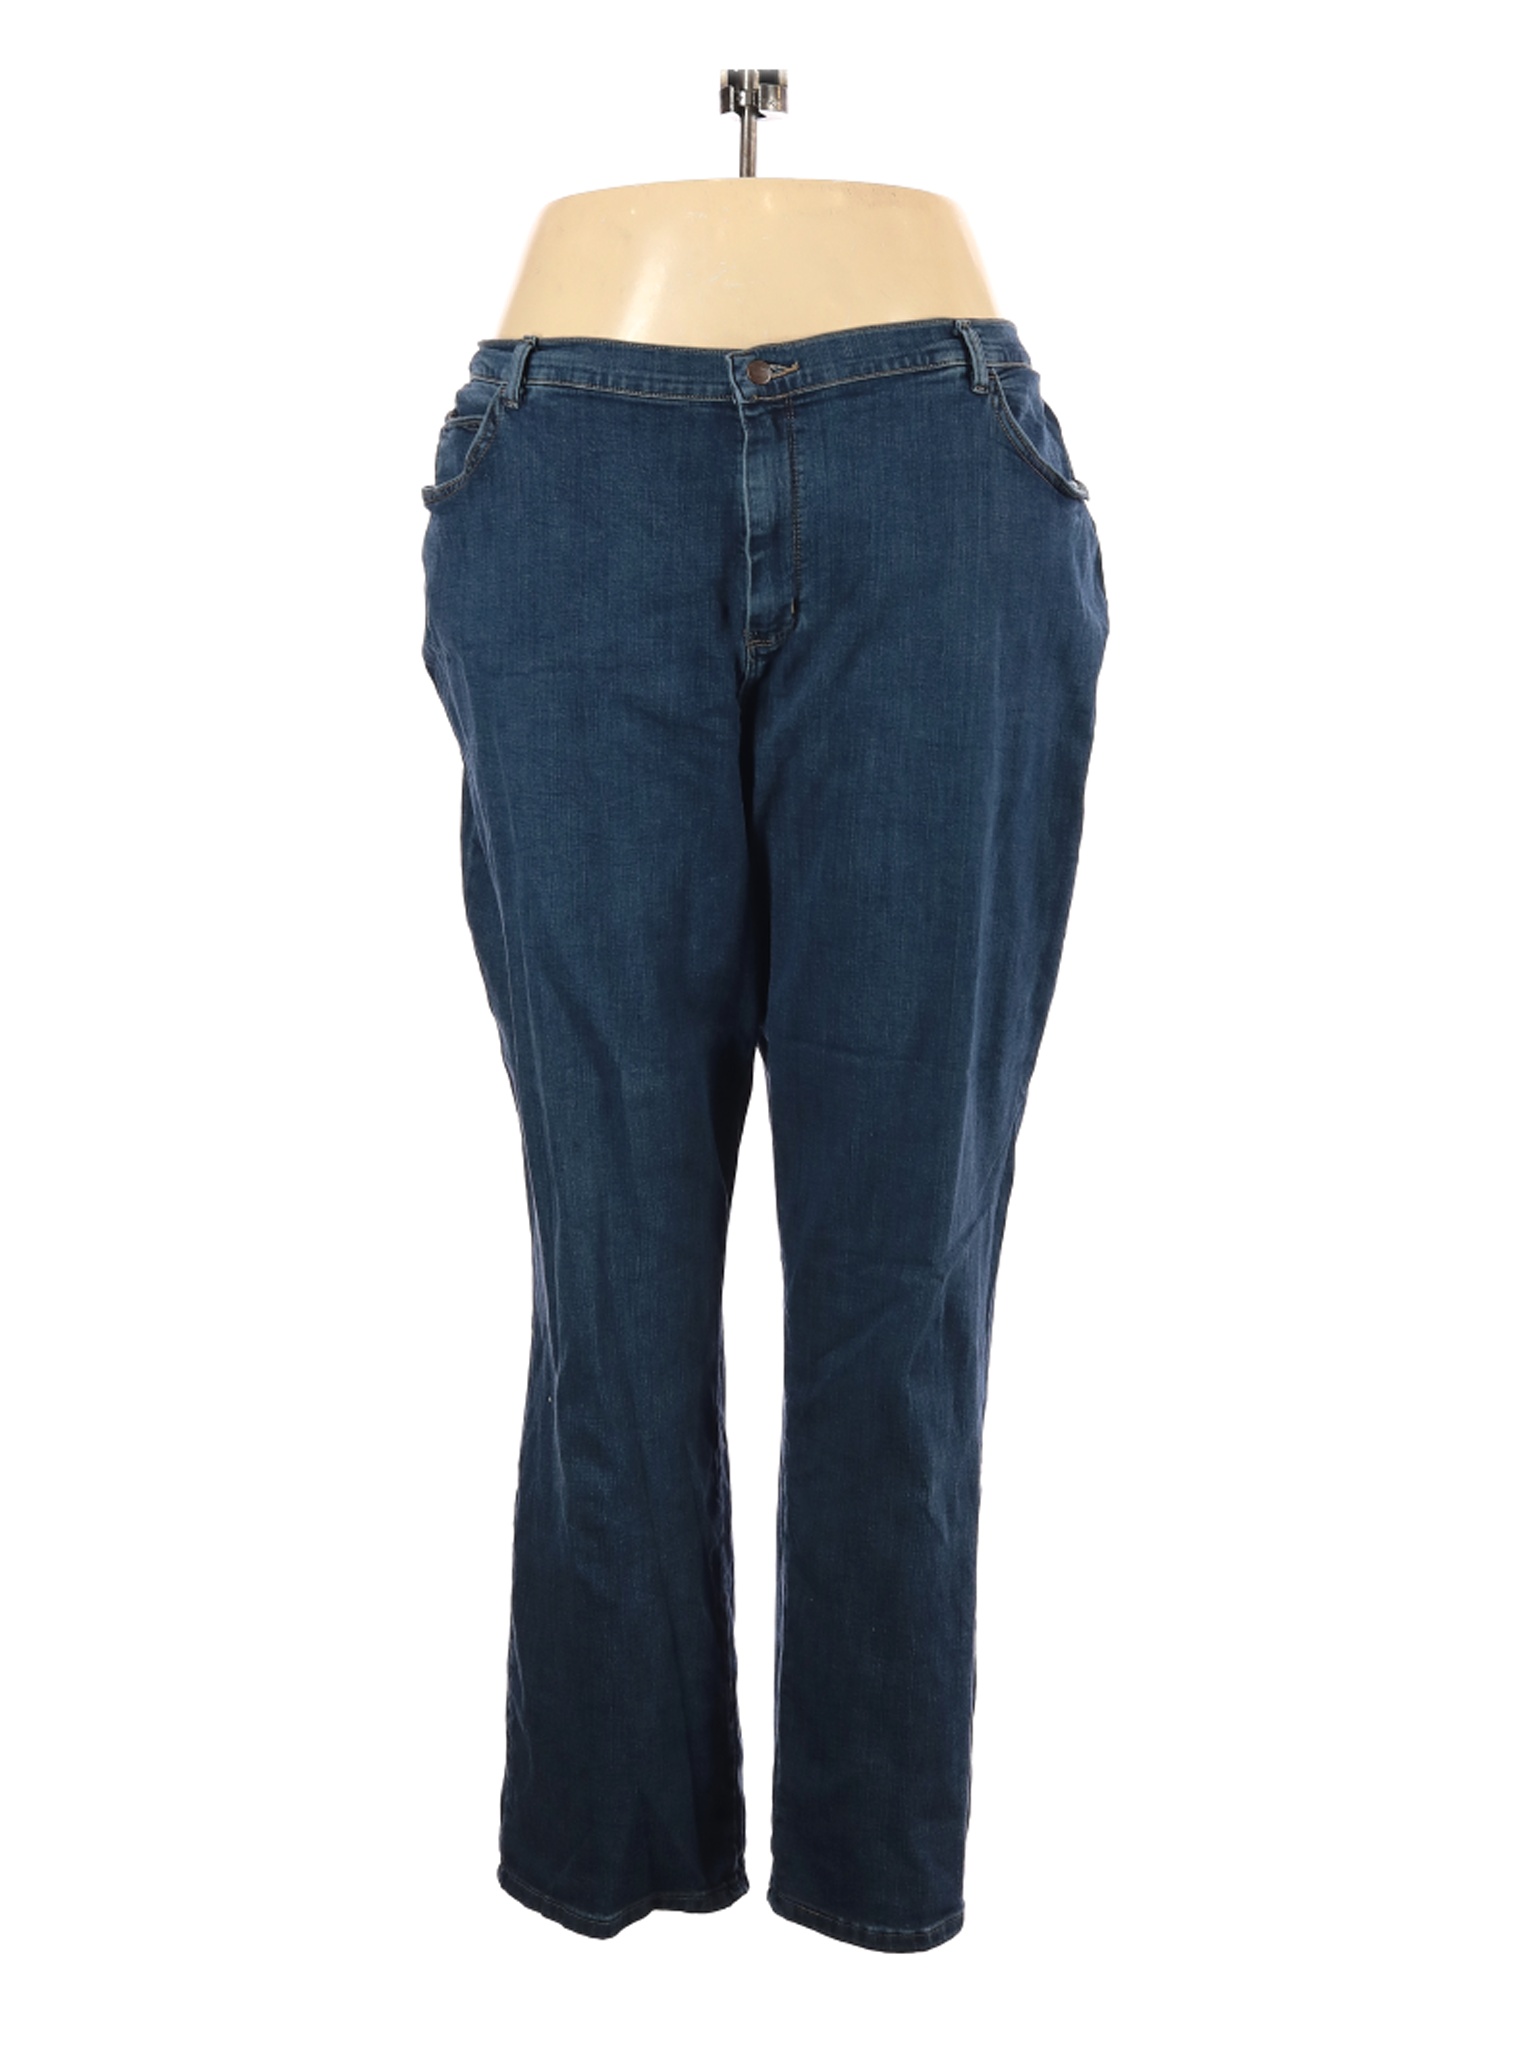 Lee Women Blue Jeans 26 Plus | eBay